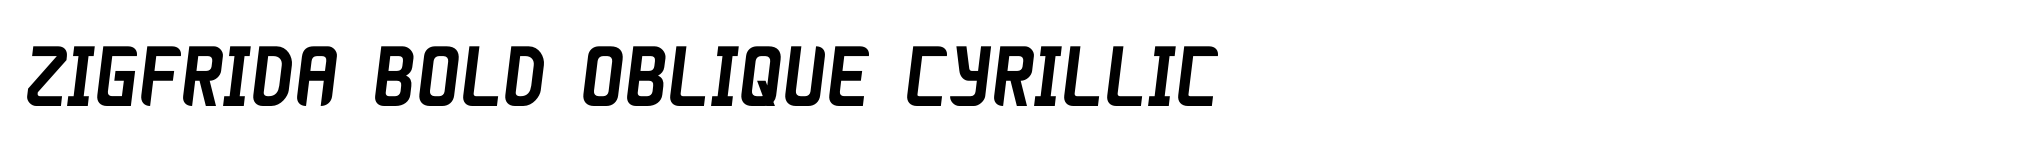 Zigfrida Bold Oblique Cyrillic image